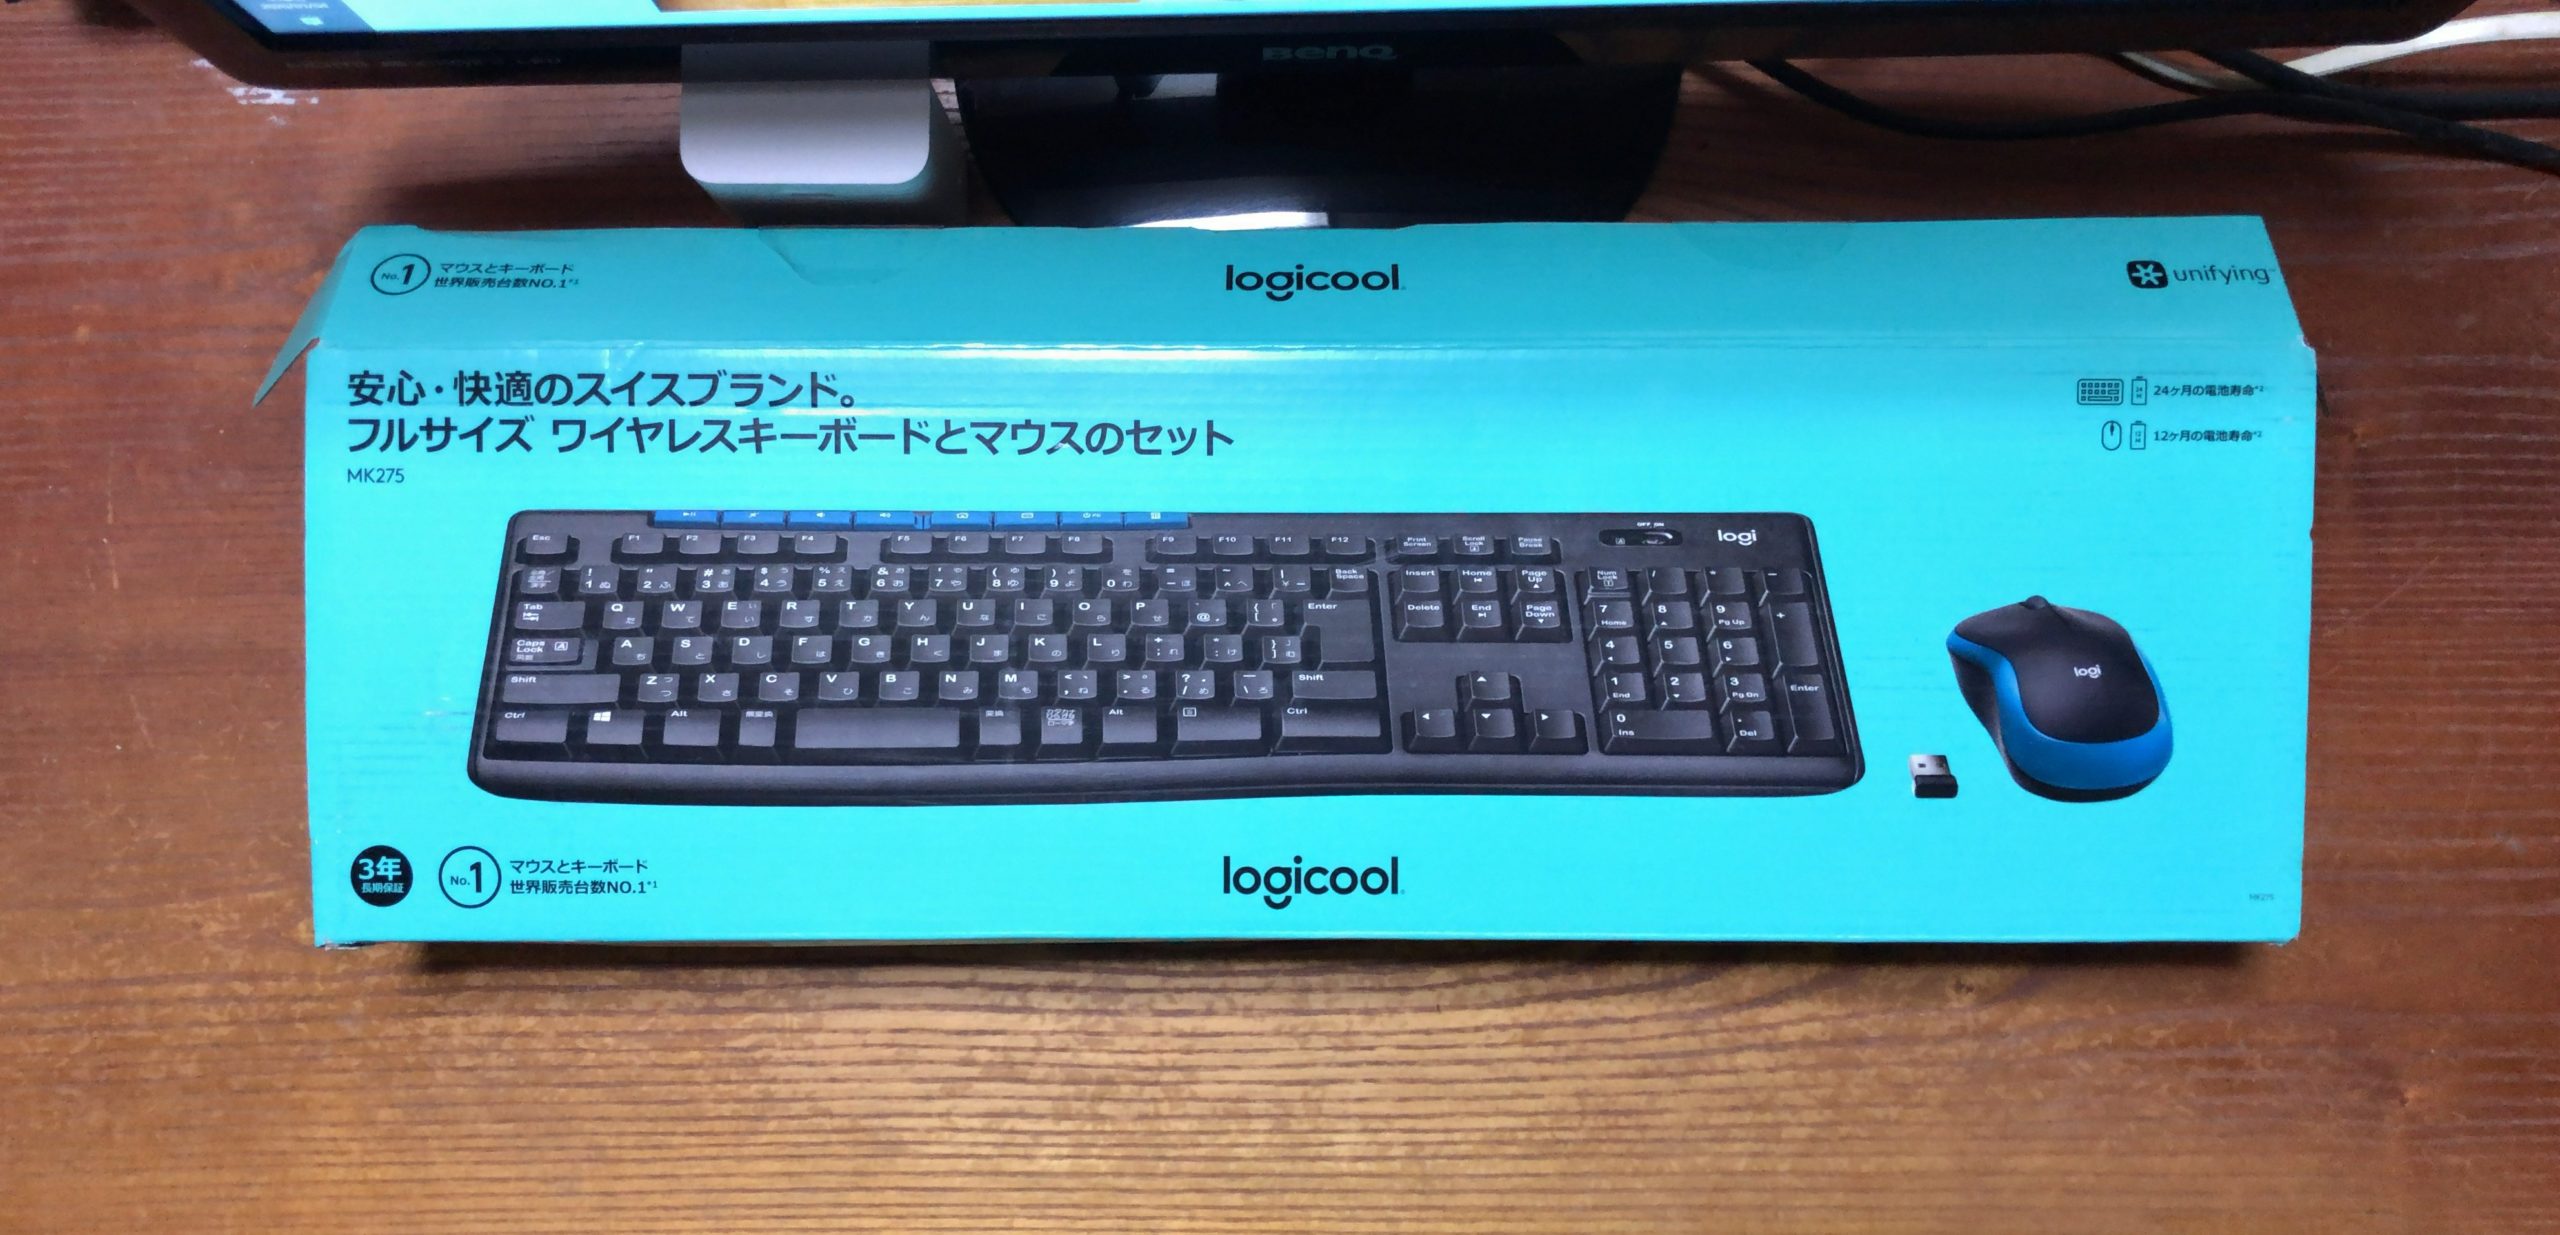 Logicool(ロジクール) ワイヤレスマウス キーボードMK275を購入